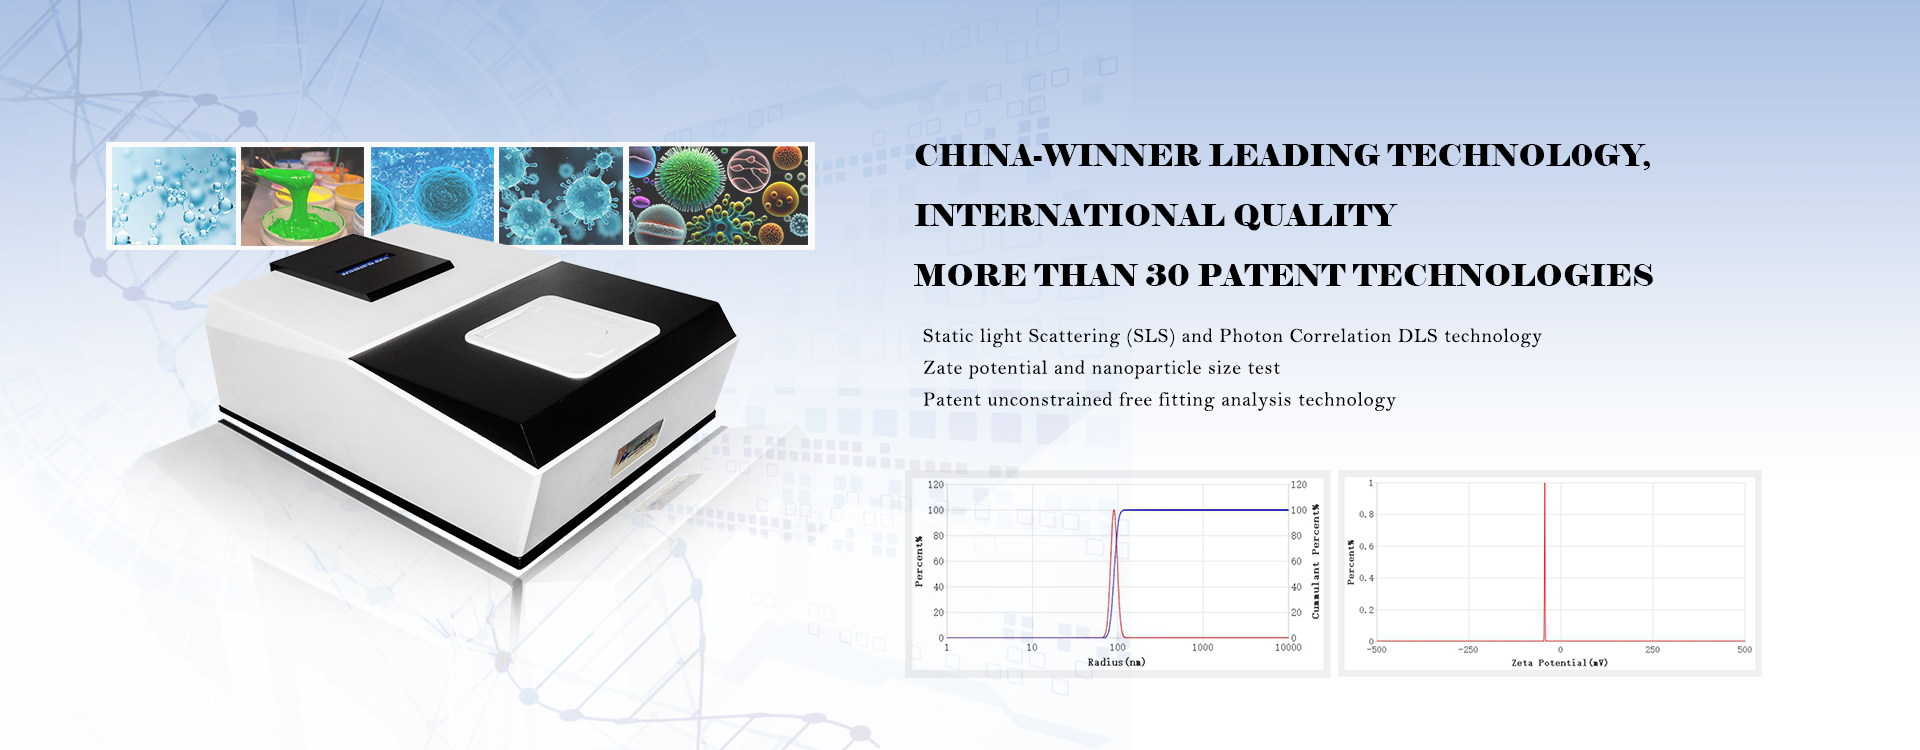 China-Winner Leading Technology